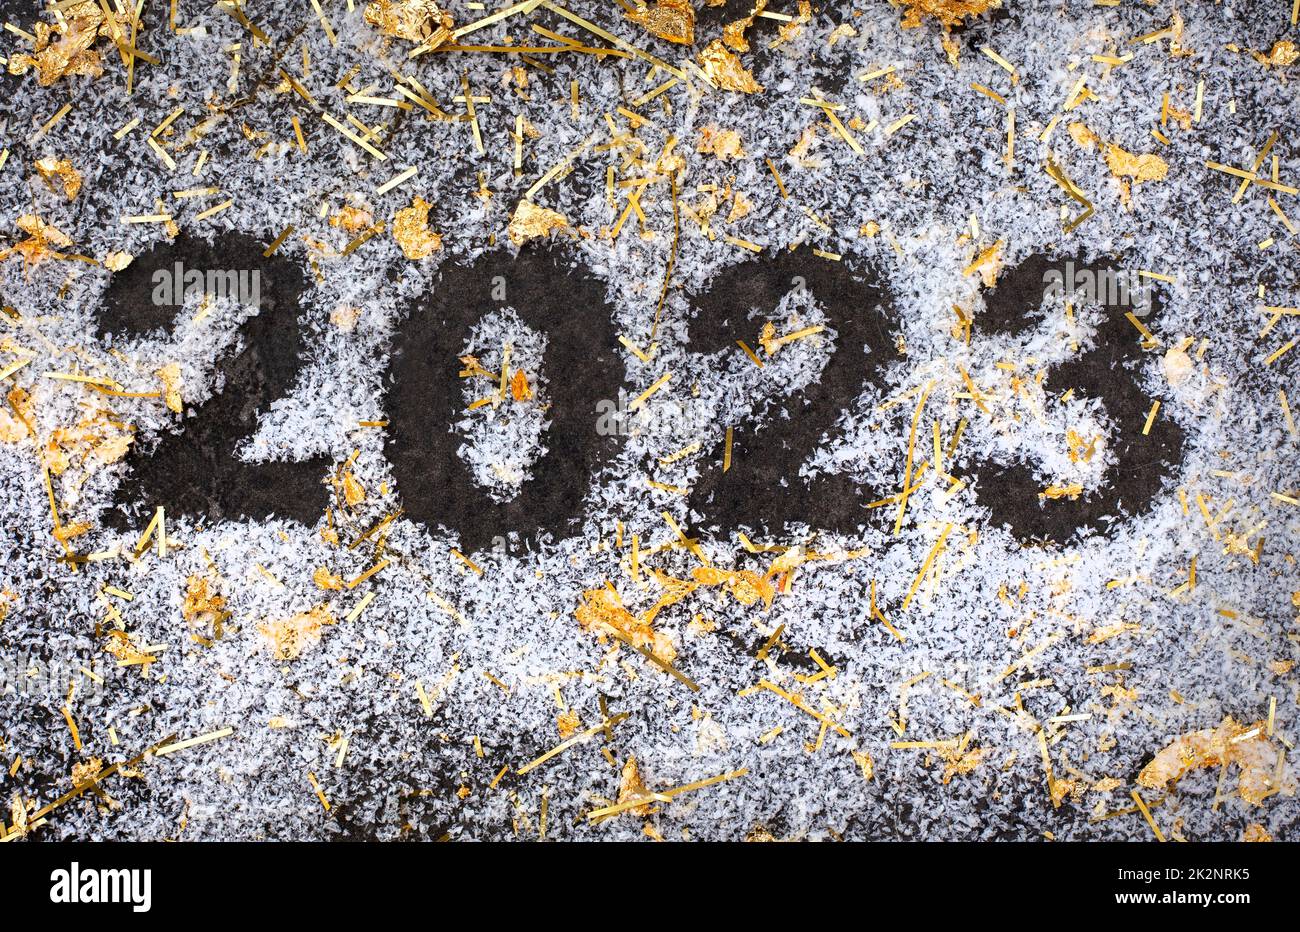 2023 su sfondo scuro con neve e scintille dorate, nuovo anno, nuovo inizio Foto Stock